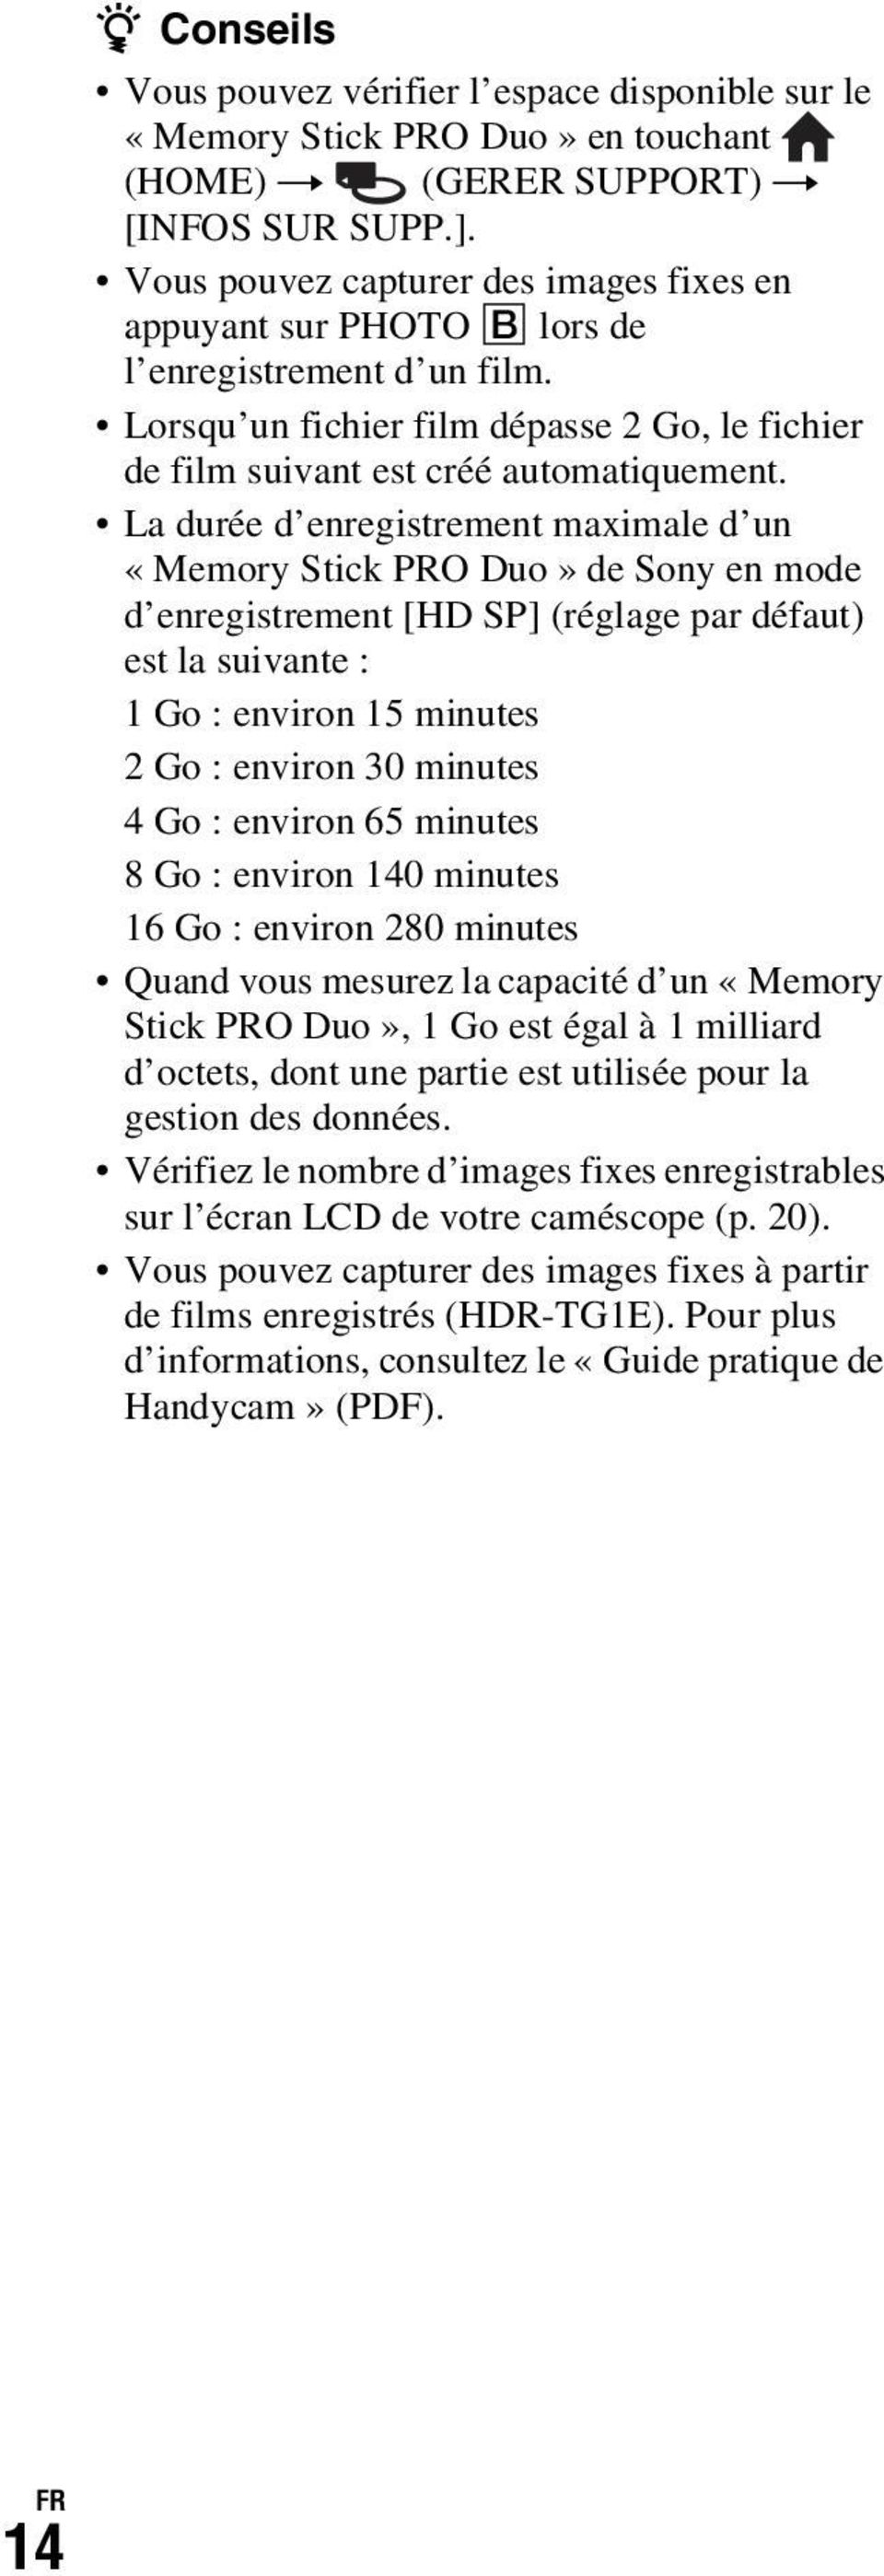 La durée d enregistrement maximale d un «Memory Stick PRO Duo» de Sony en mode d enregistrement [HD SP] (réglage par défaut) est la suivante : 1 Go : environ 15 minutes 2 Go : environ 30 minutes 4 Go